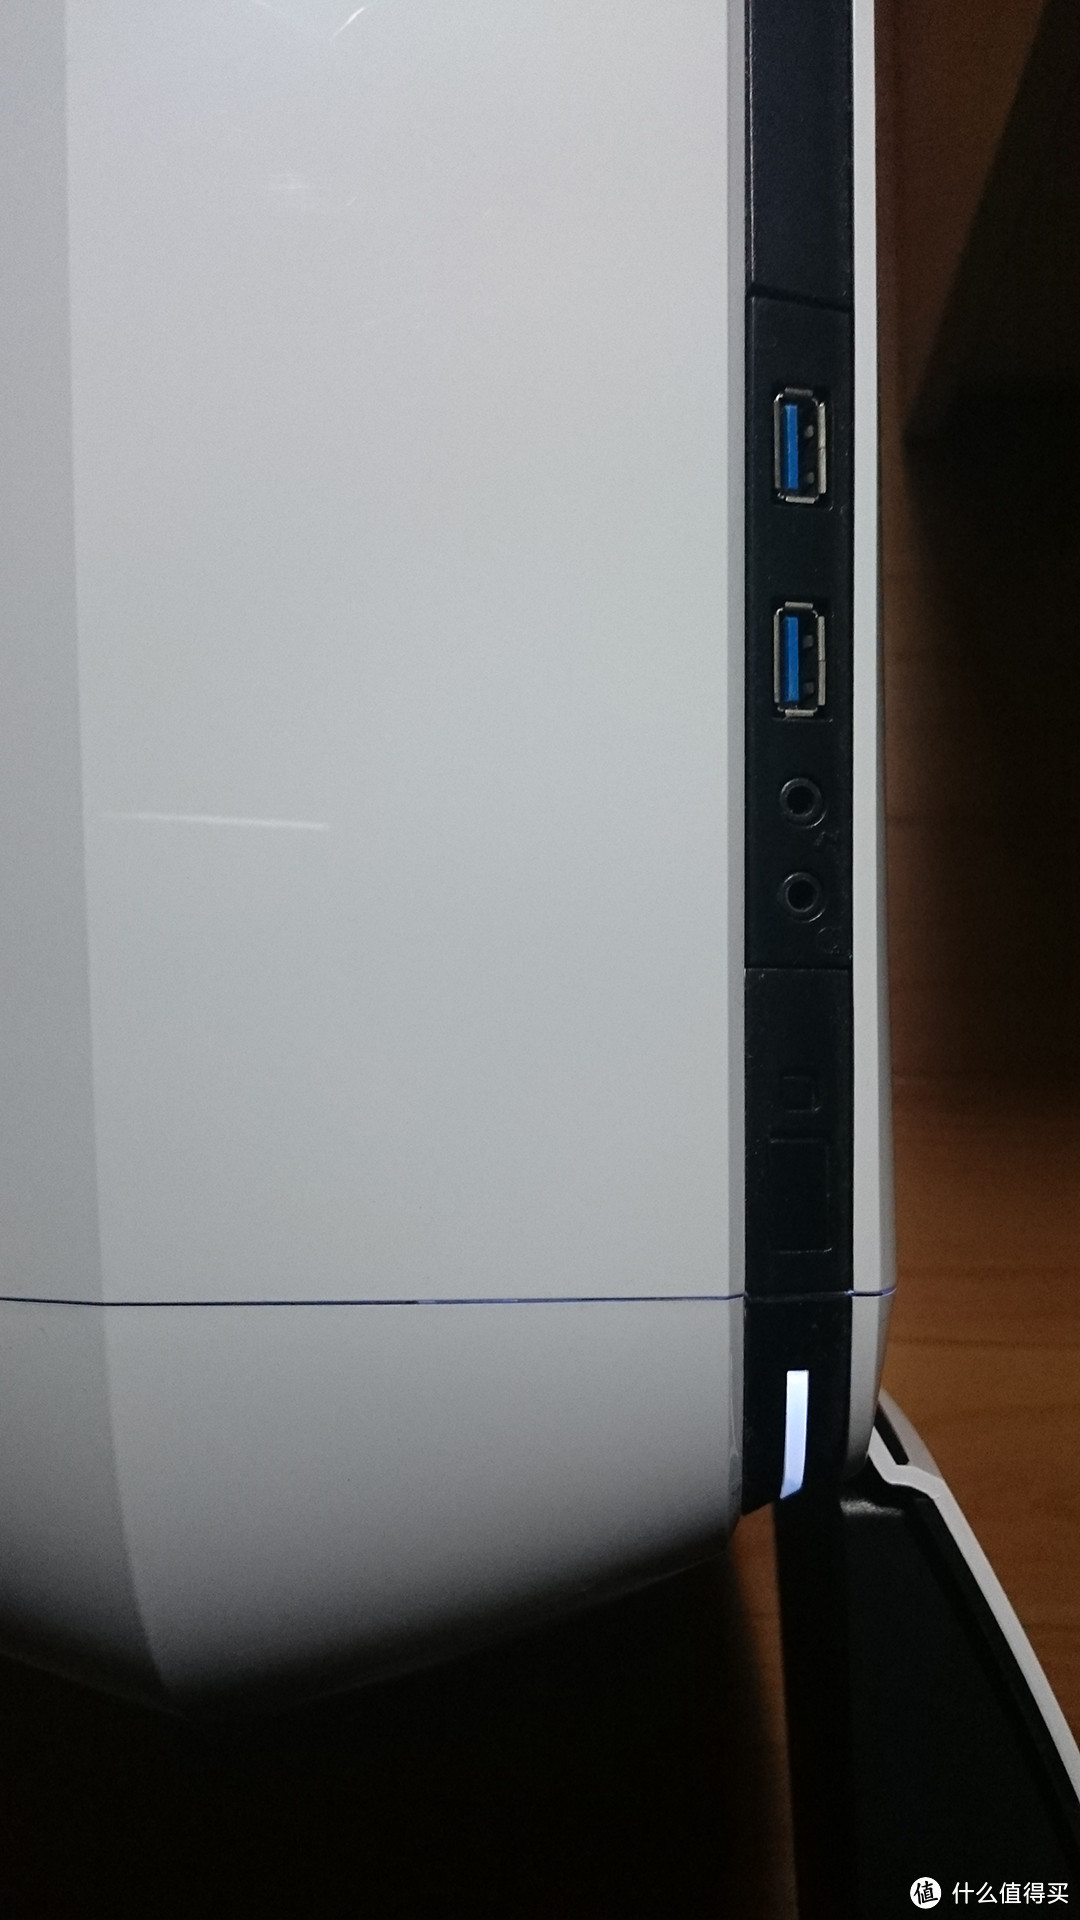 Crucial 英睿达 MX200 250G SATA3 固态硬盘开箱，顺便晒下台式机